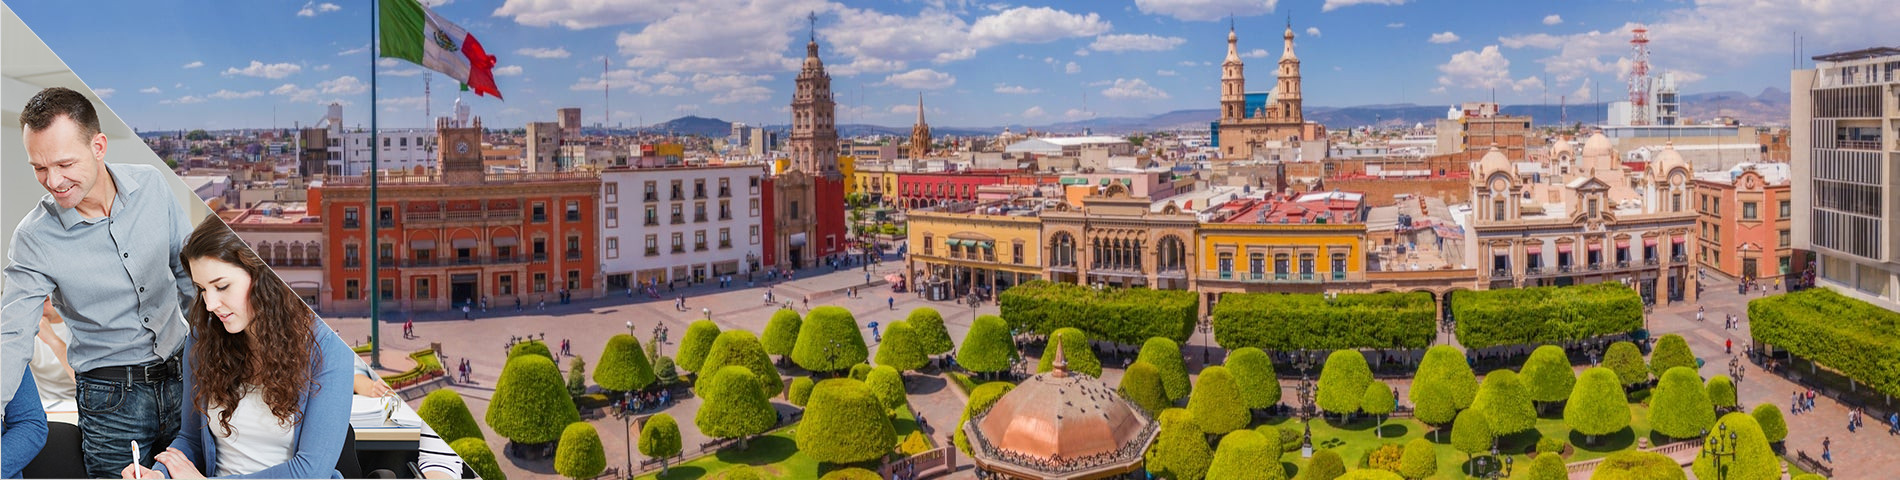 Guanajuato - Combinado: Clases en Grupo + Particulares